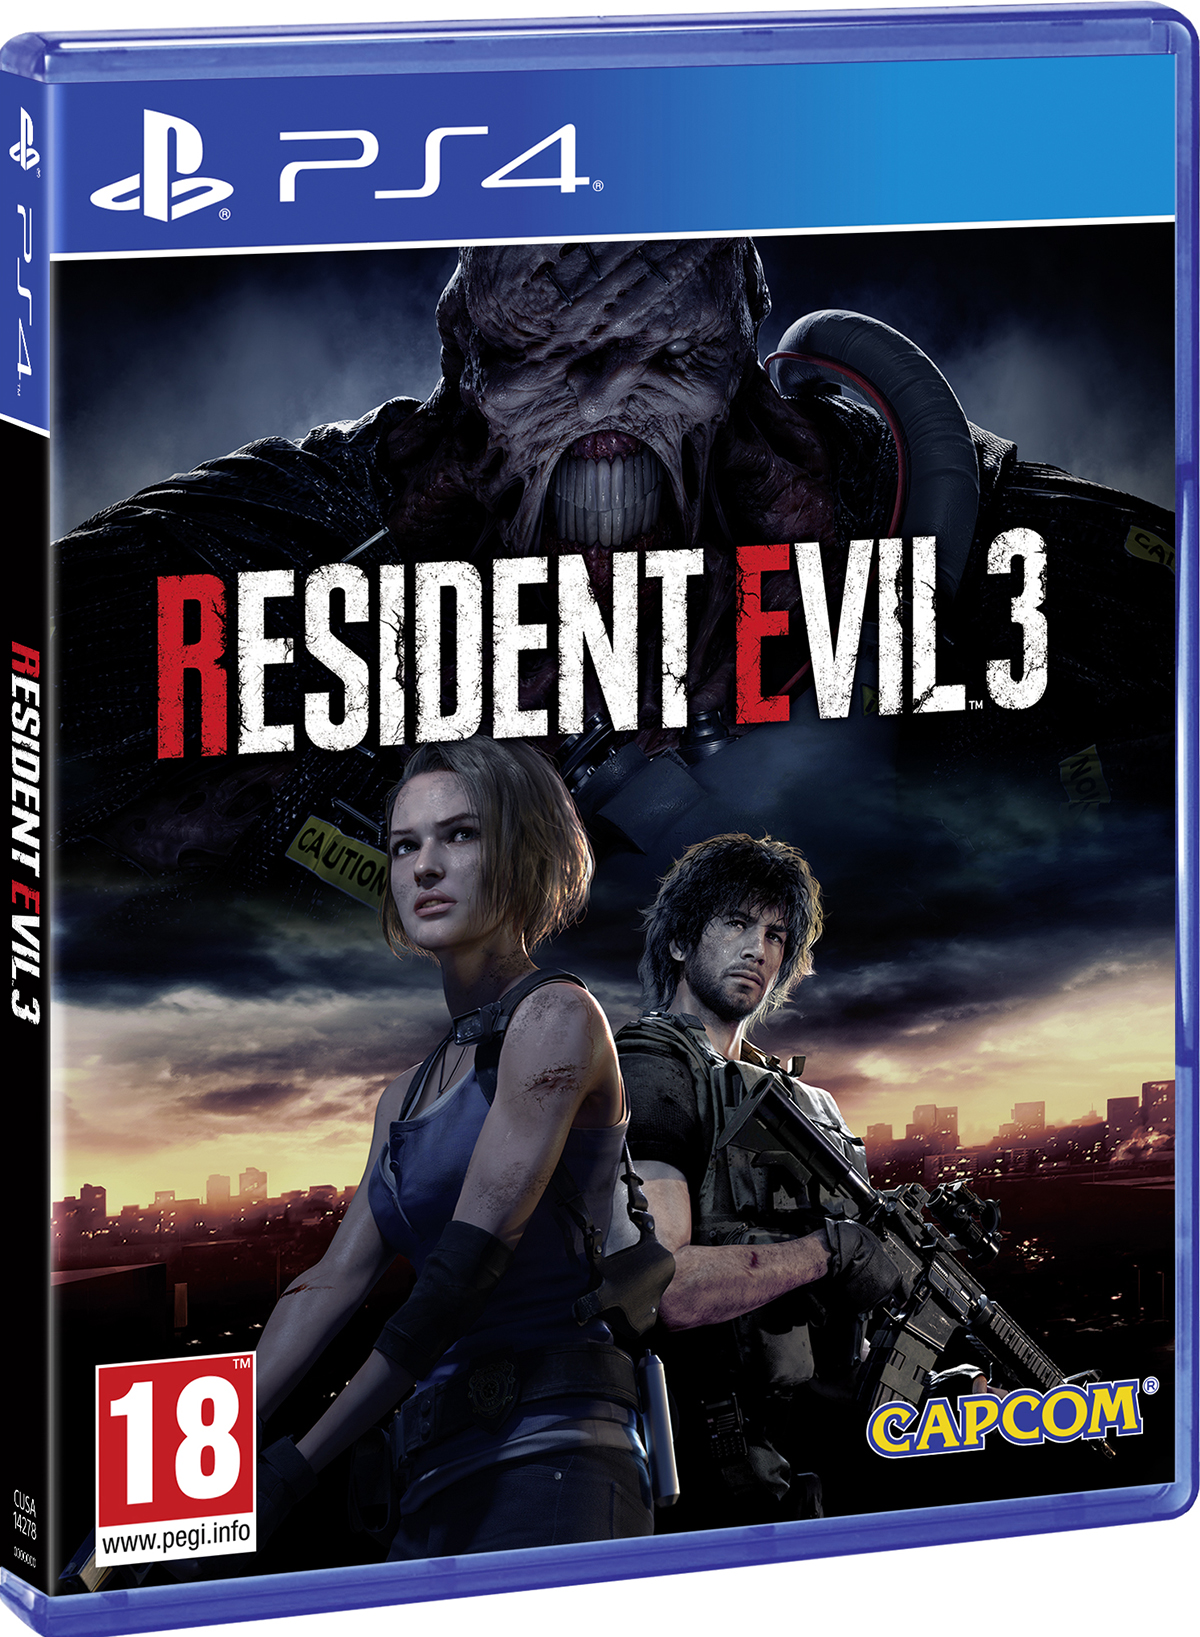 Игра Resident Evil 3 (Обитель Зла 3) Remake 2020